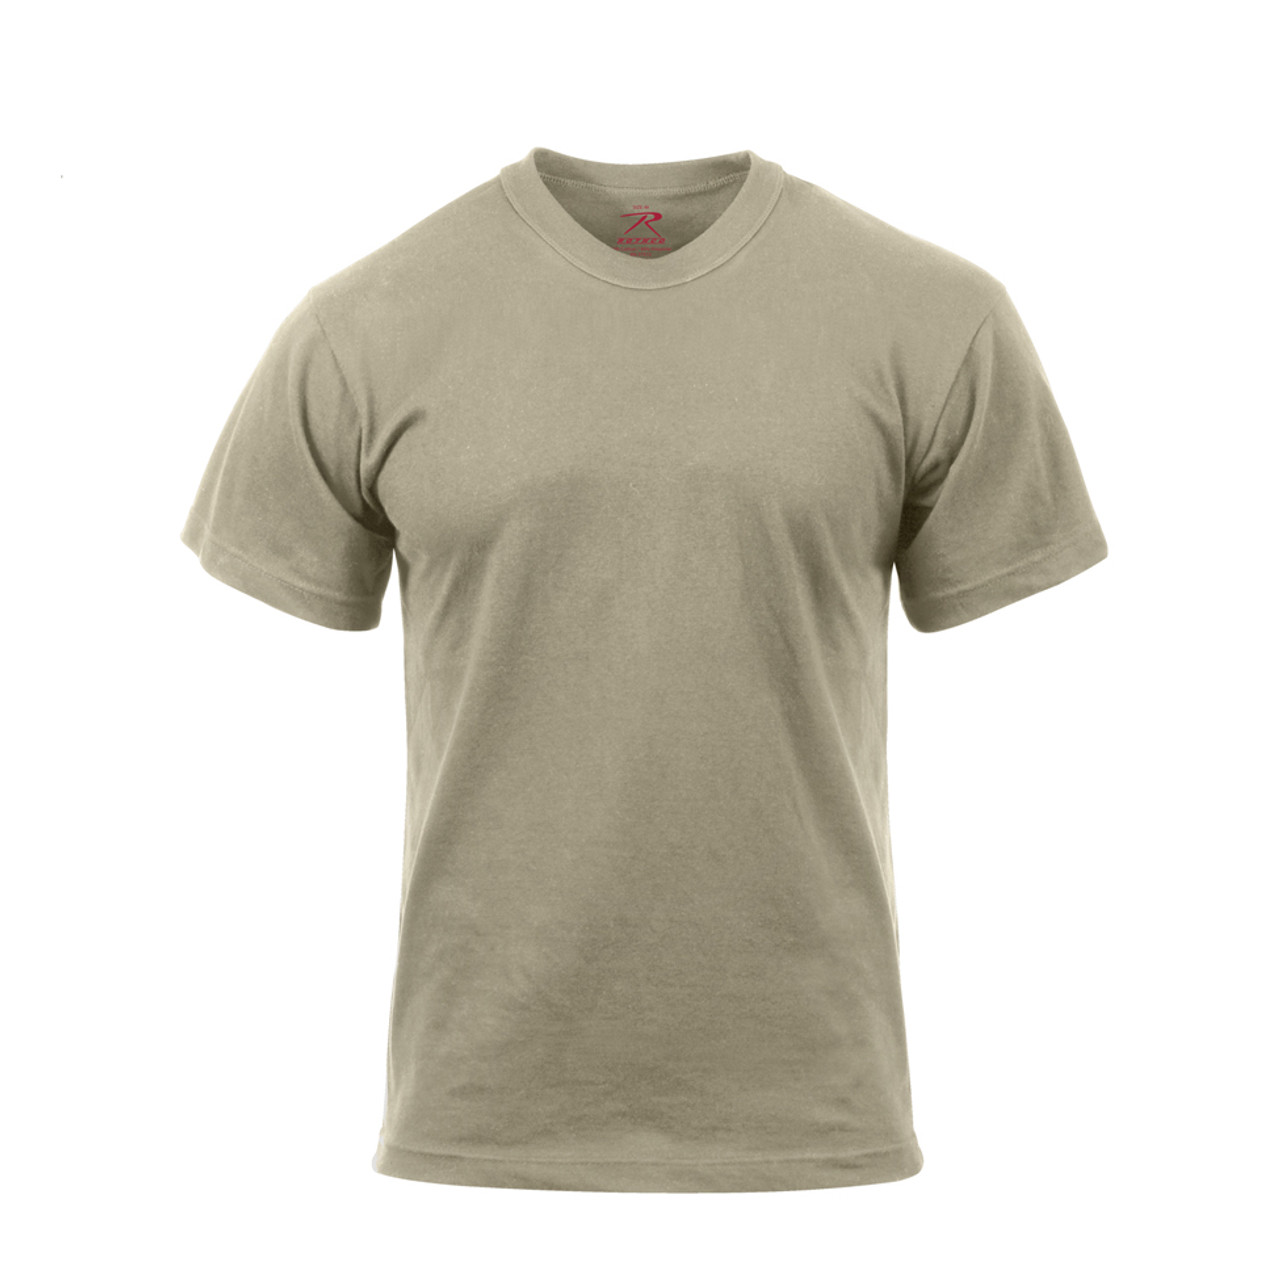 Professor bønner Forgænger Shop Desert Sand Moisture Wicking T Shirt - Fatigues Army Navy Gear